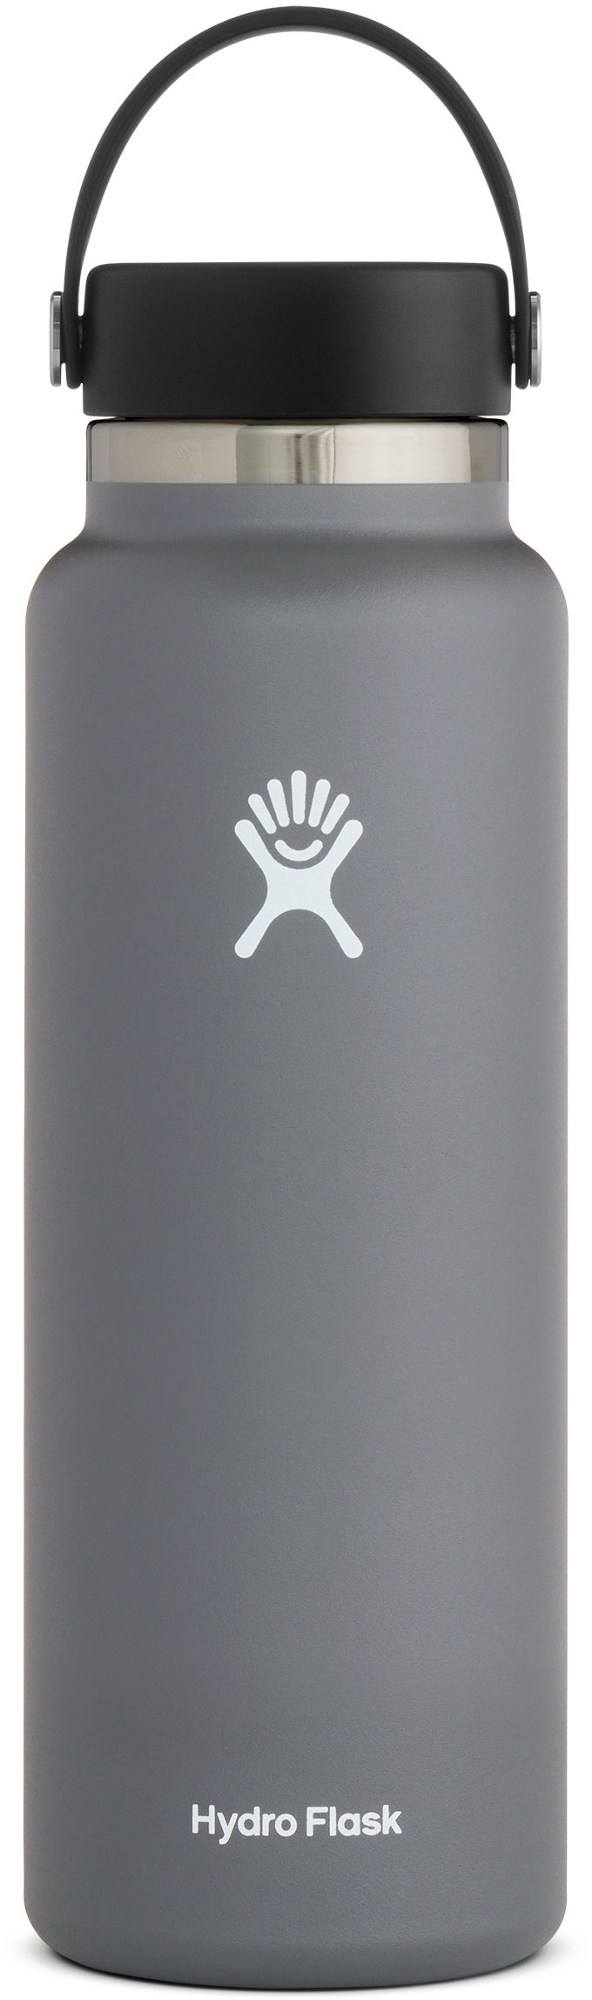 Вакуумная бутылка для воды с широким горлышком и гибкой крышкой — 40 эт. унция Hydro Flask, серый